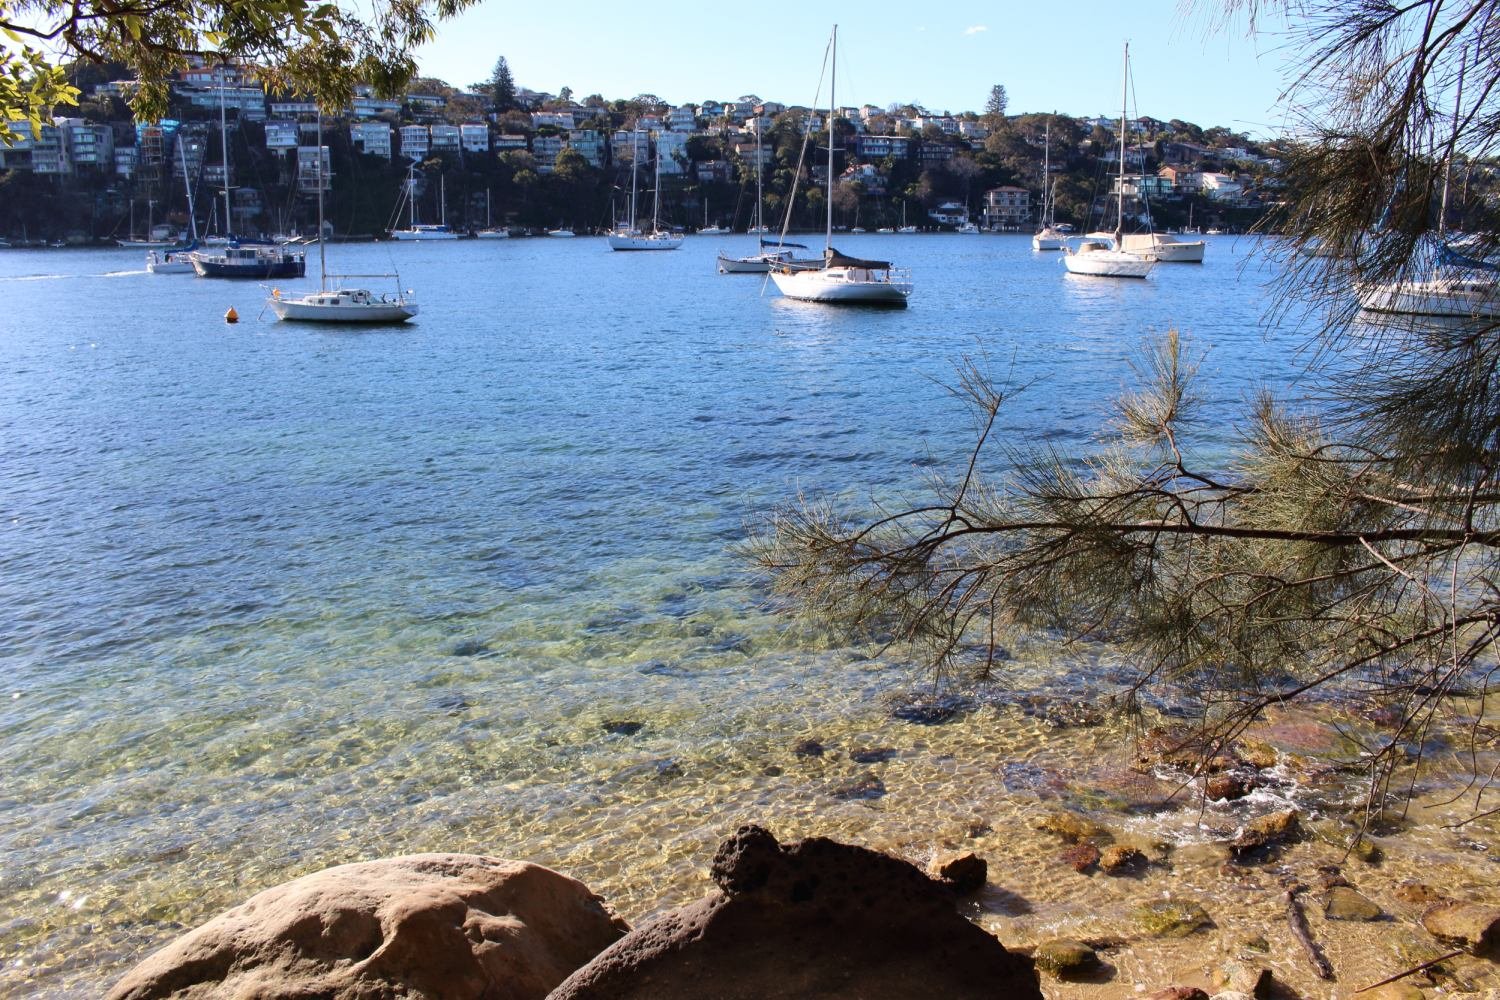 Sydney's hidden harbour spots